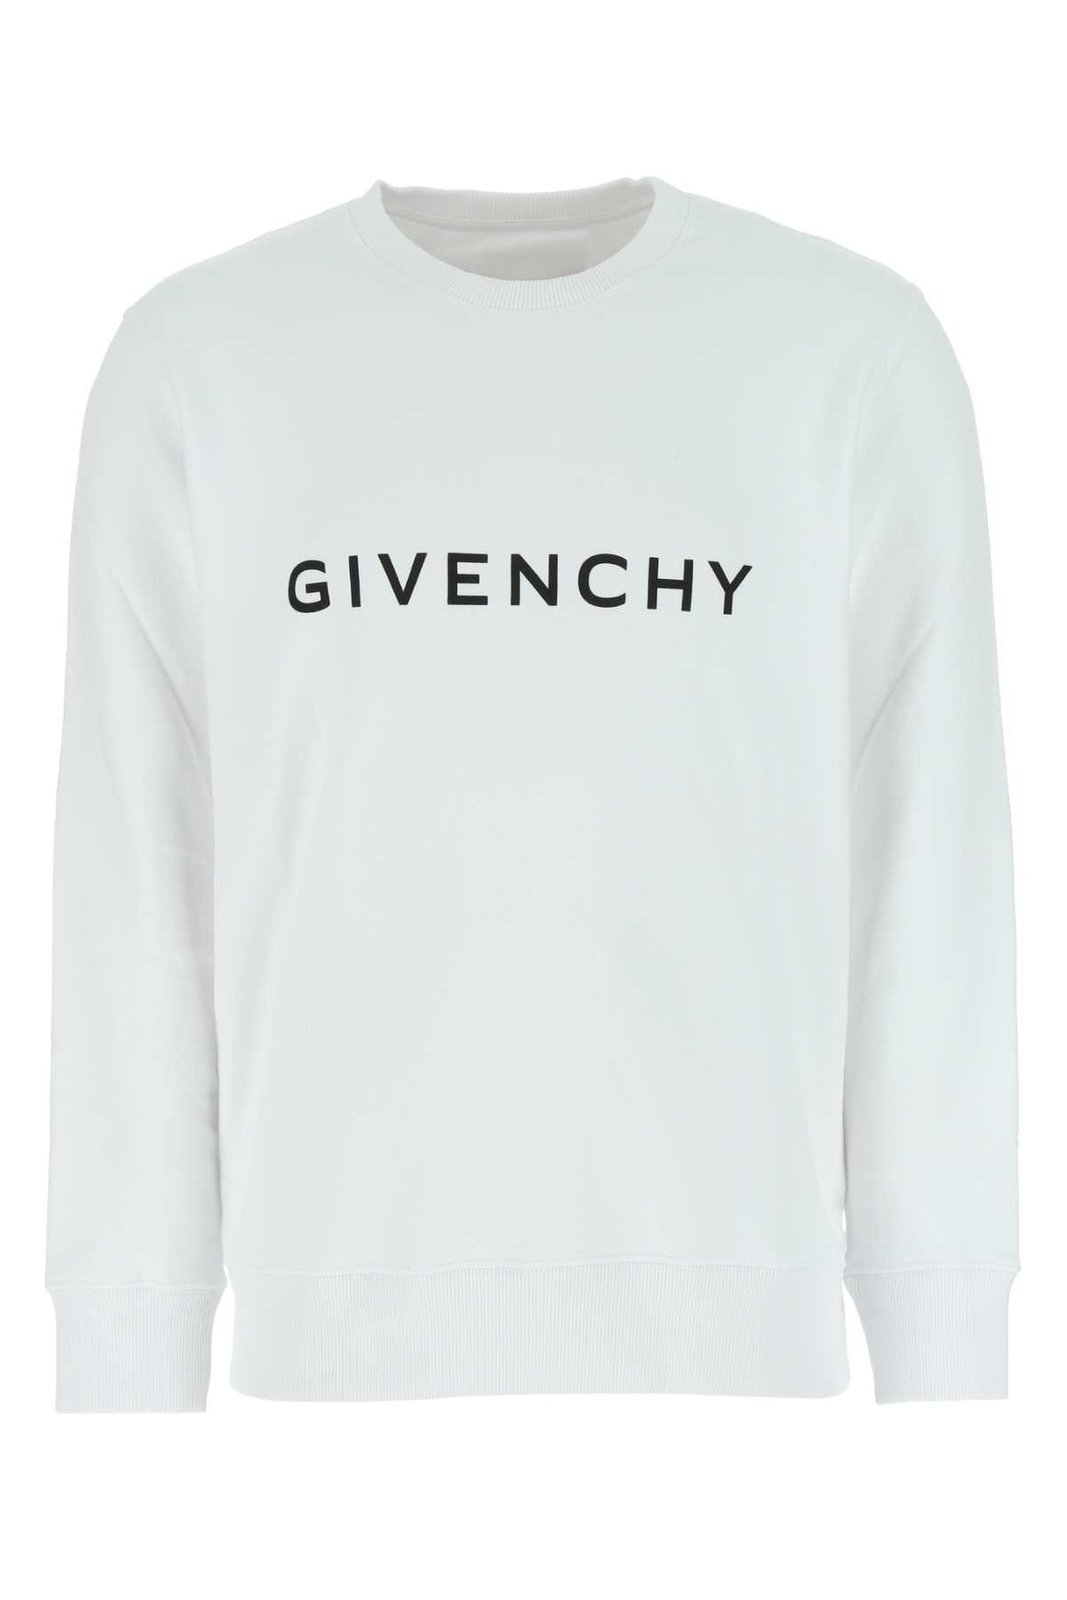 Givenchy 지방시 Archetype 슬림핏 스웨트셔츠